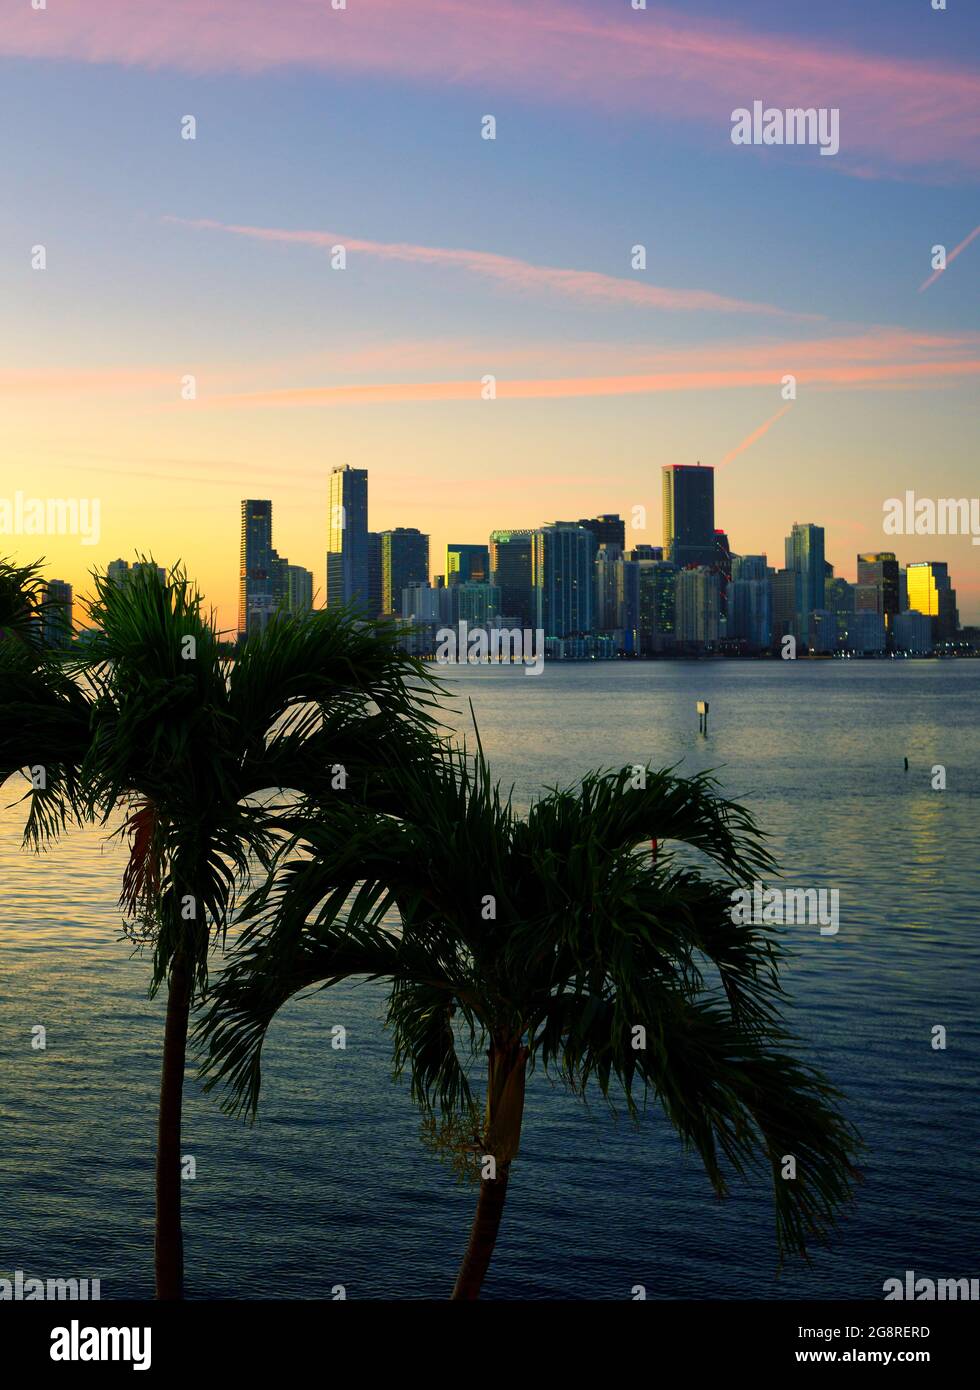 Sonnenuntergang auf dem tropischen Platz am Meer Skyline Miami Florida Gebäude Stockfoto